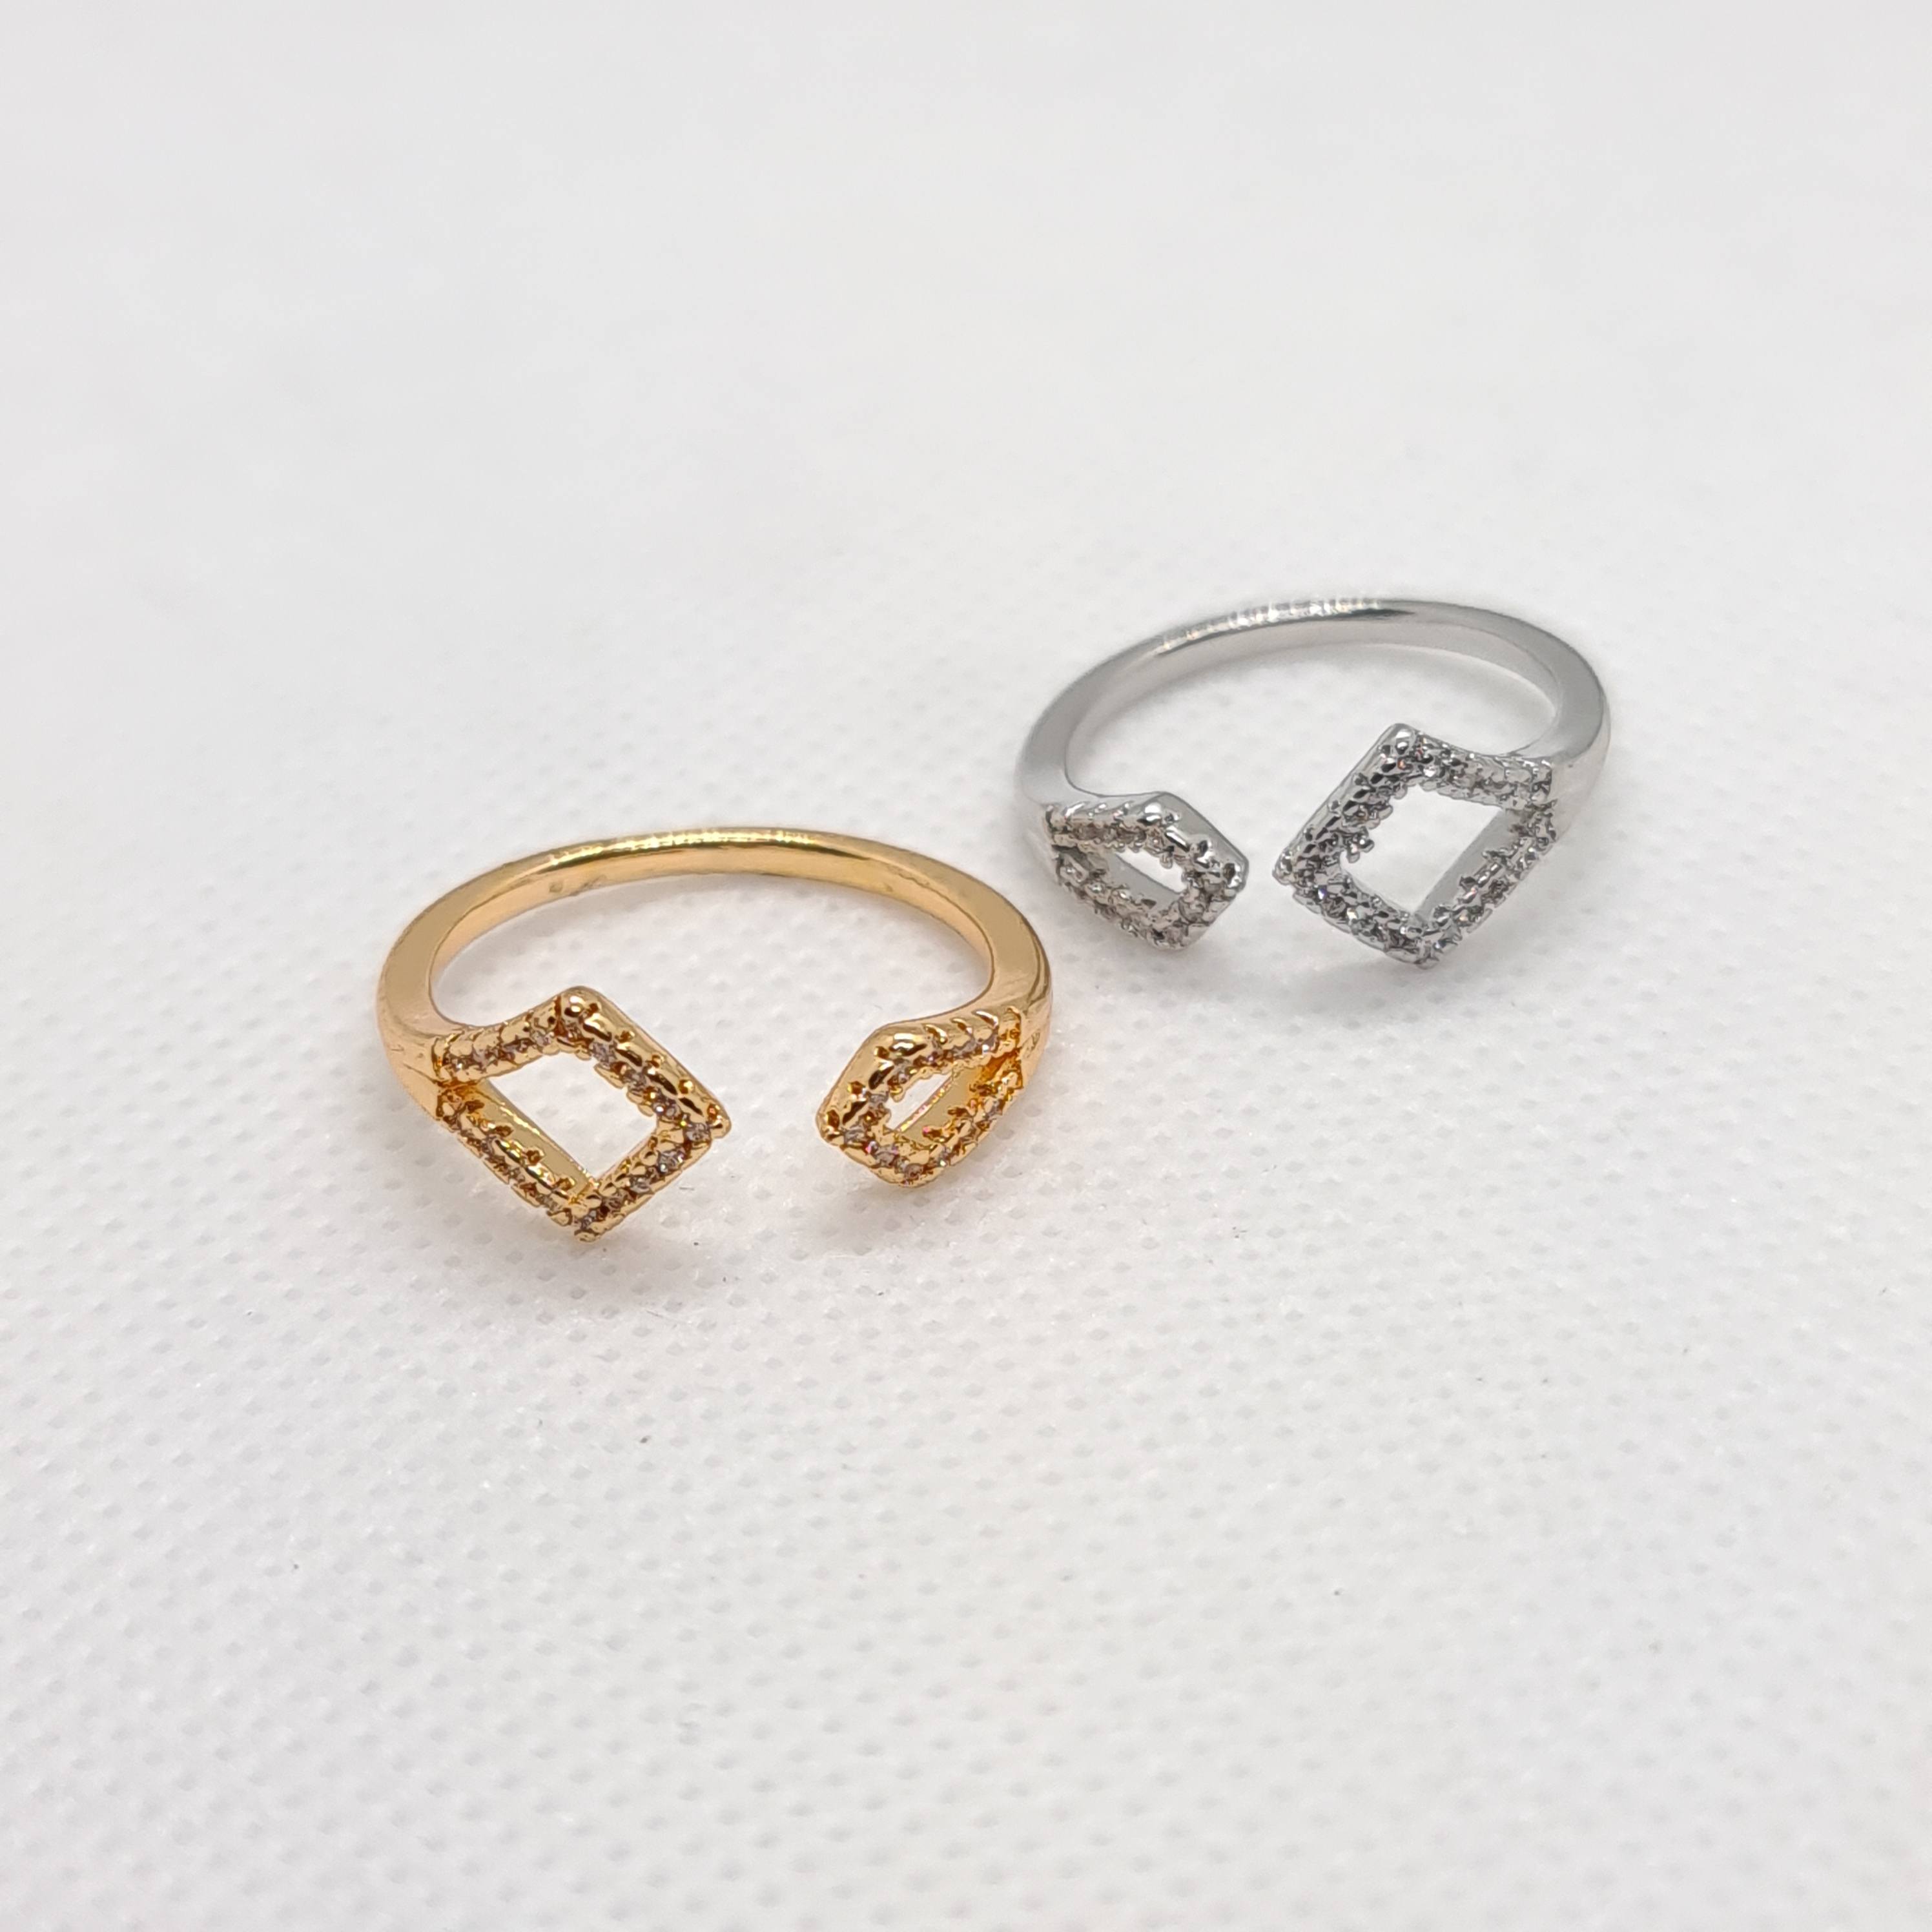 Rings - Maha fashions -  Rings